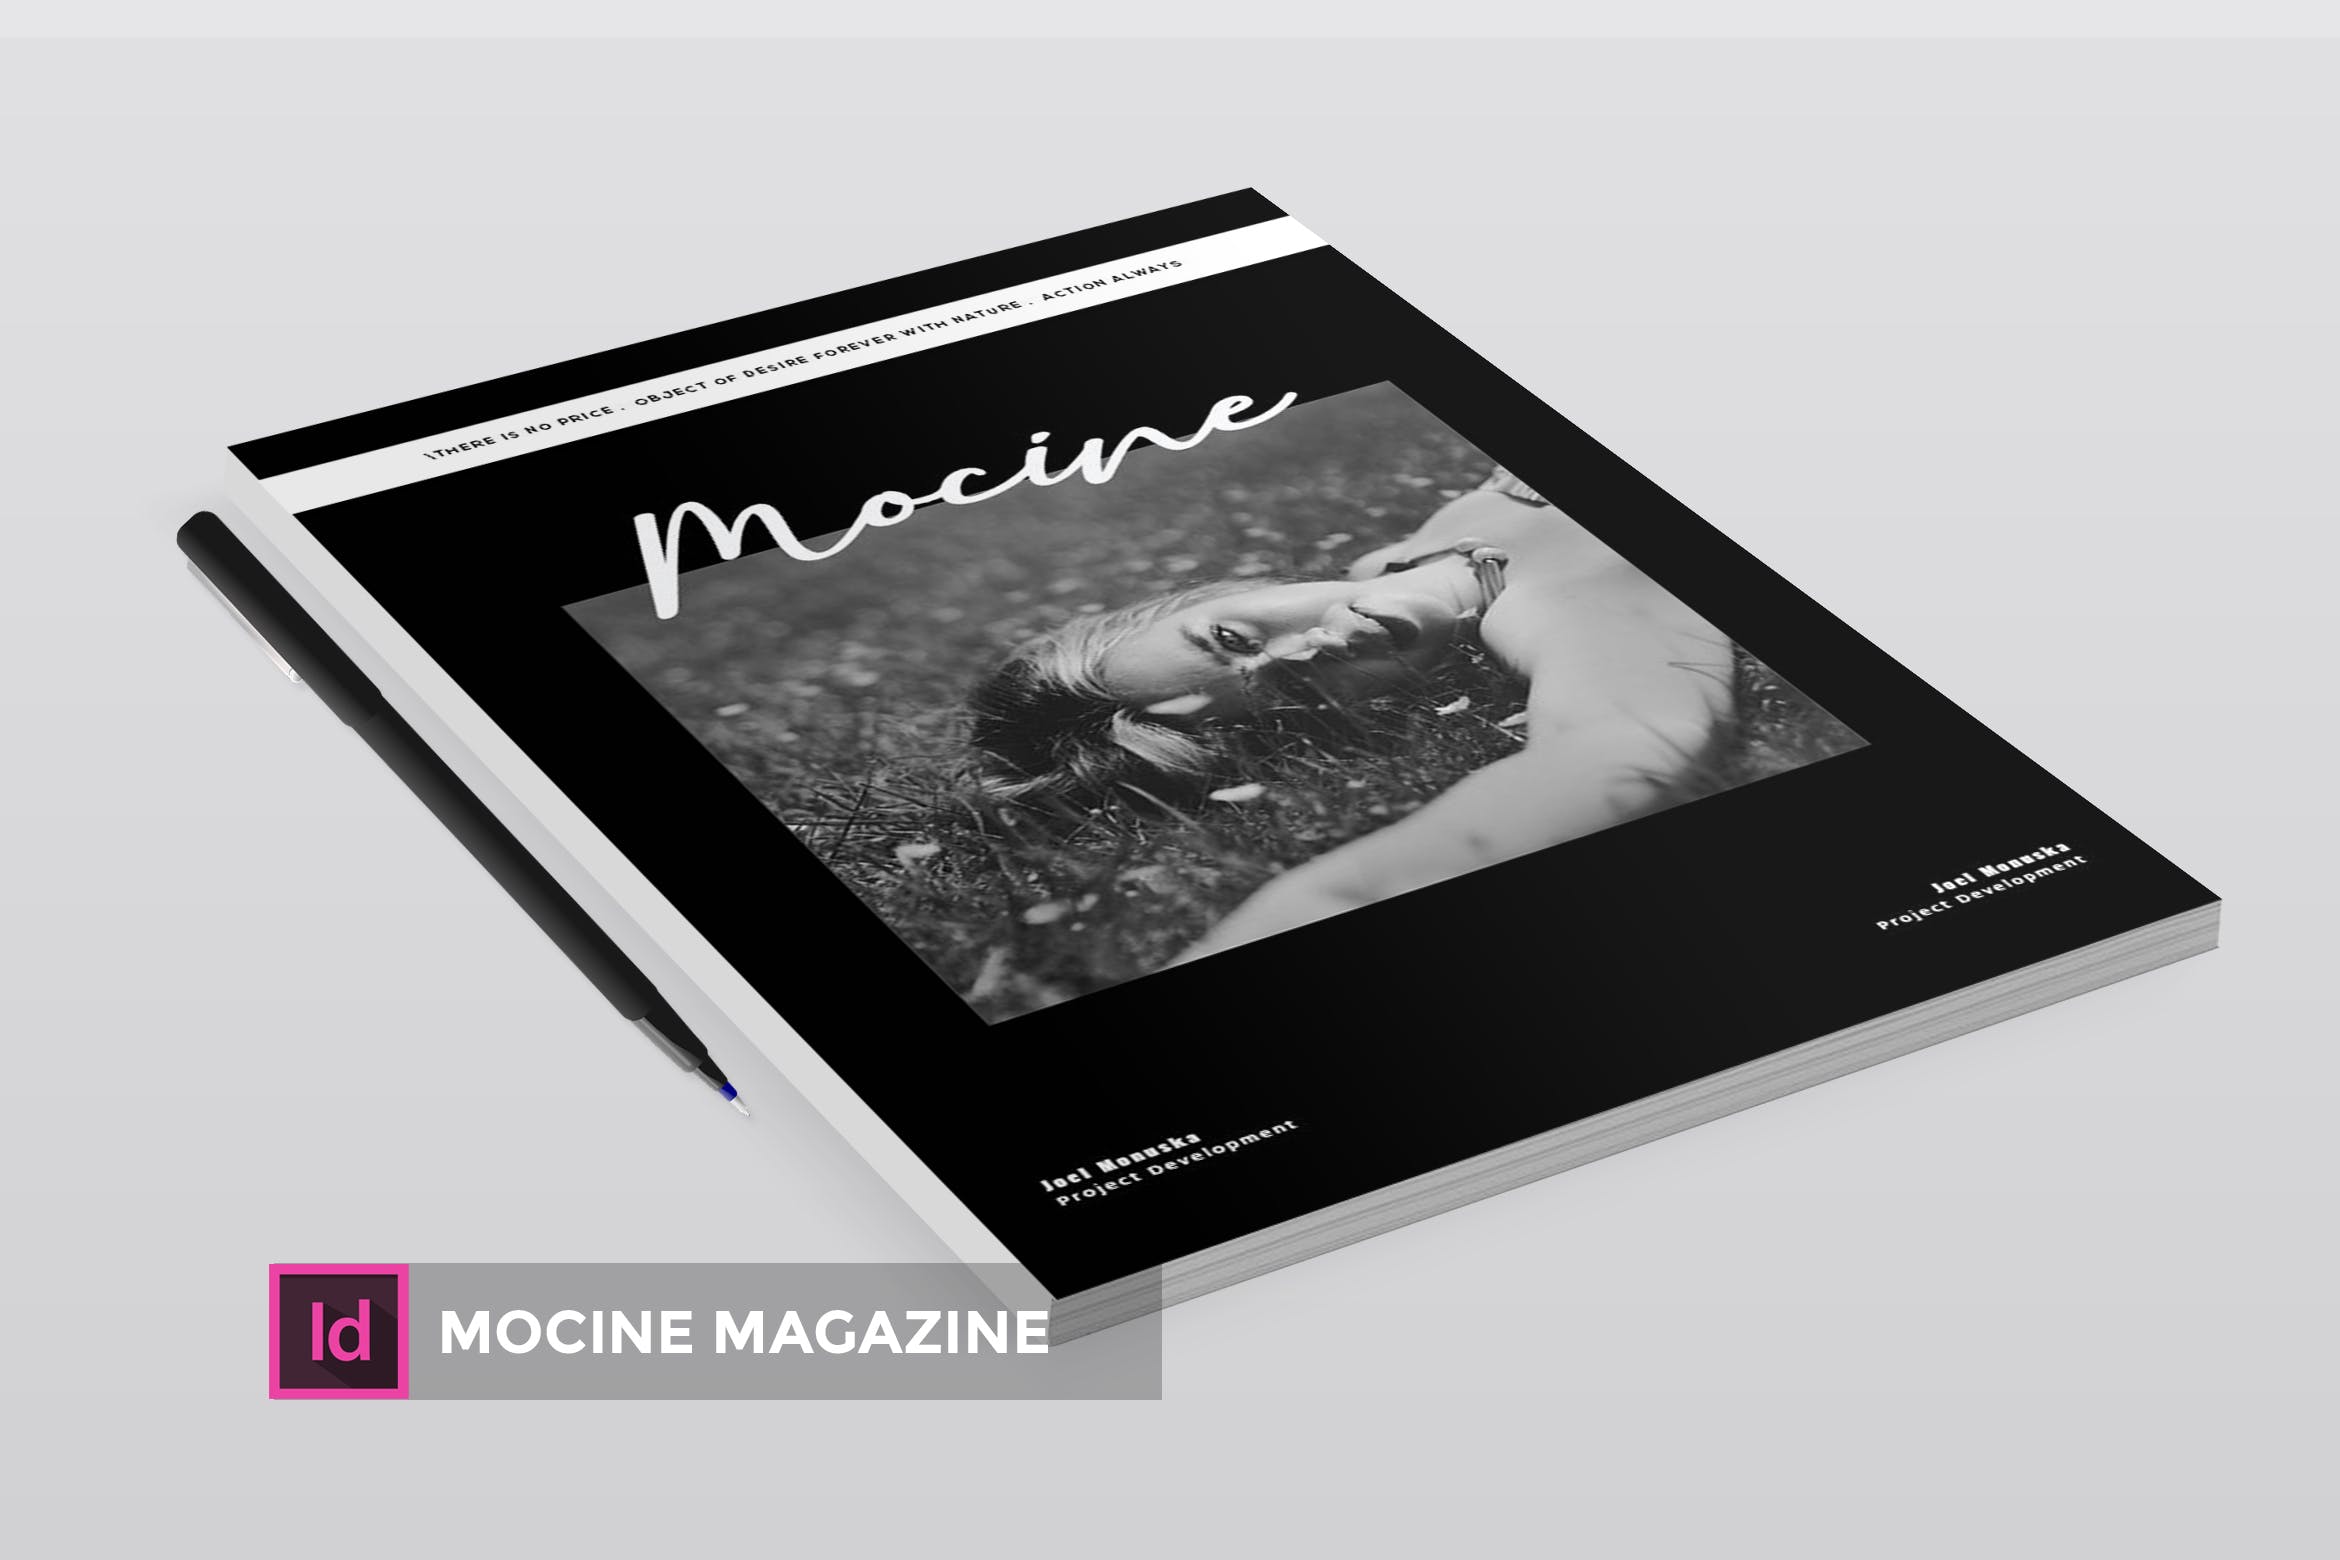 高端人物/摄影/时尚主题16图库精选杂志版式排版设计INDD模板 Mocine | Magazine Template插图